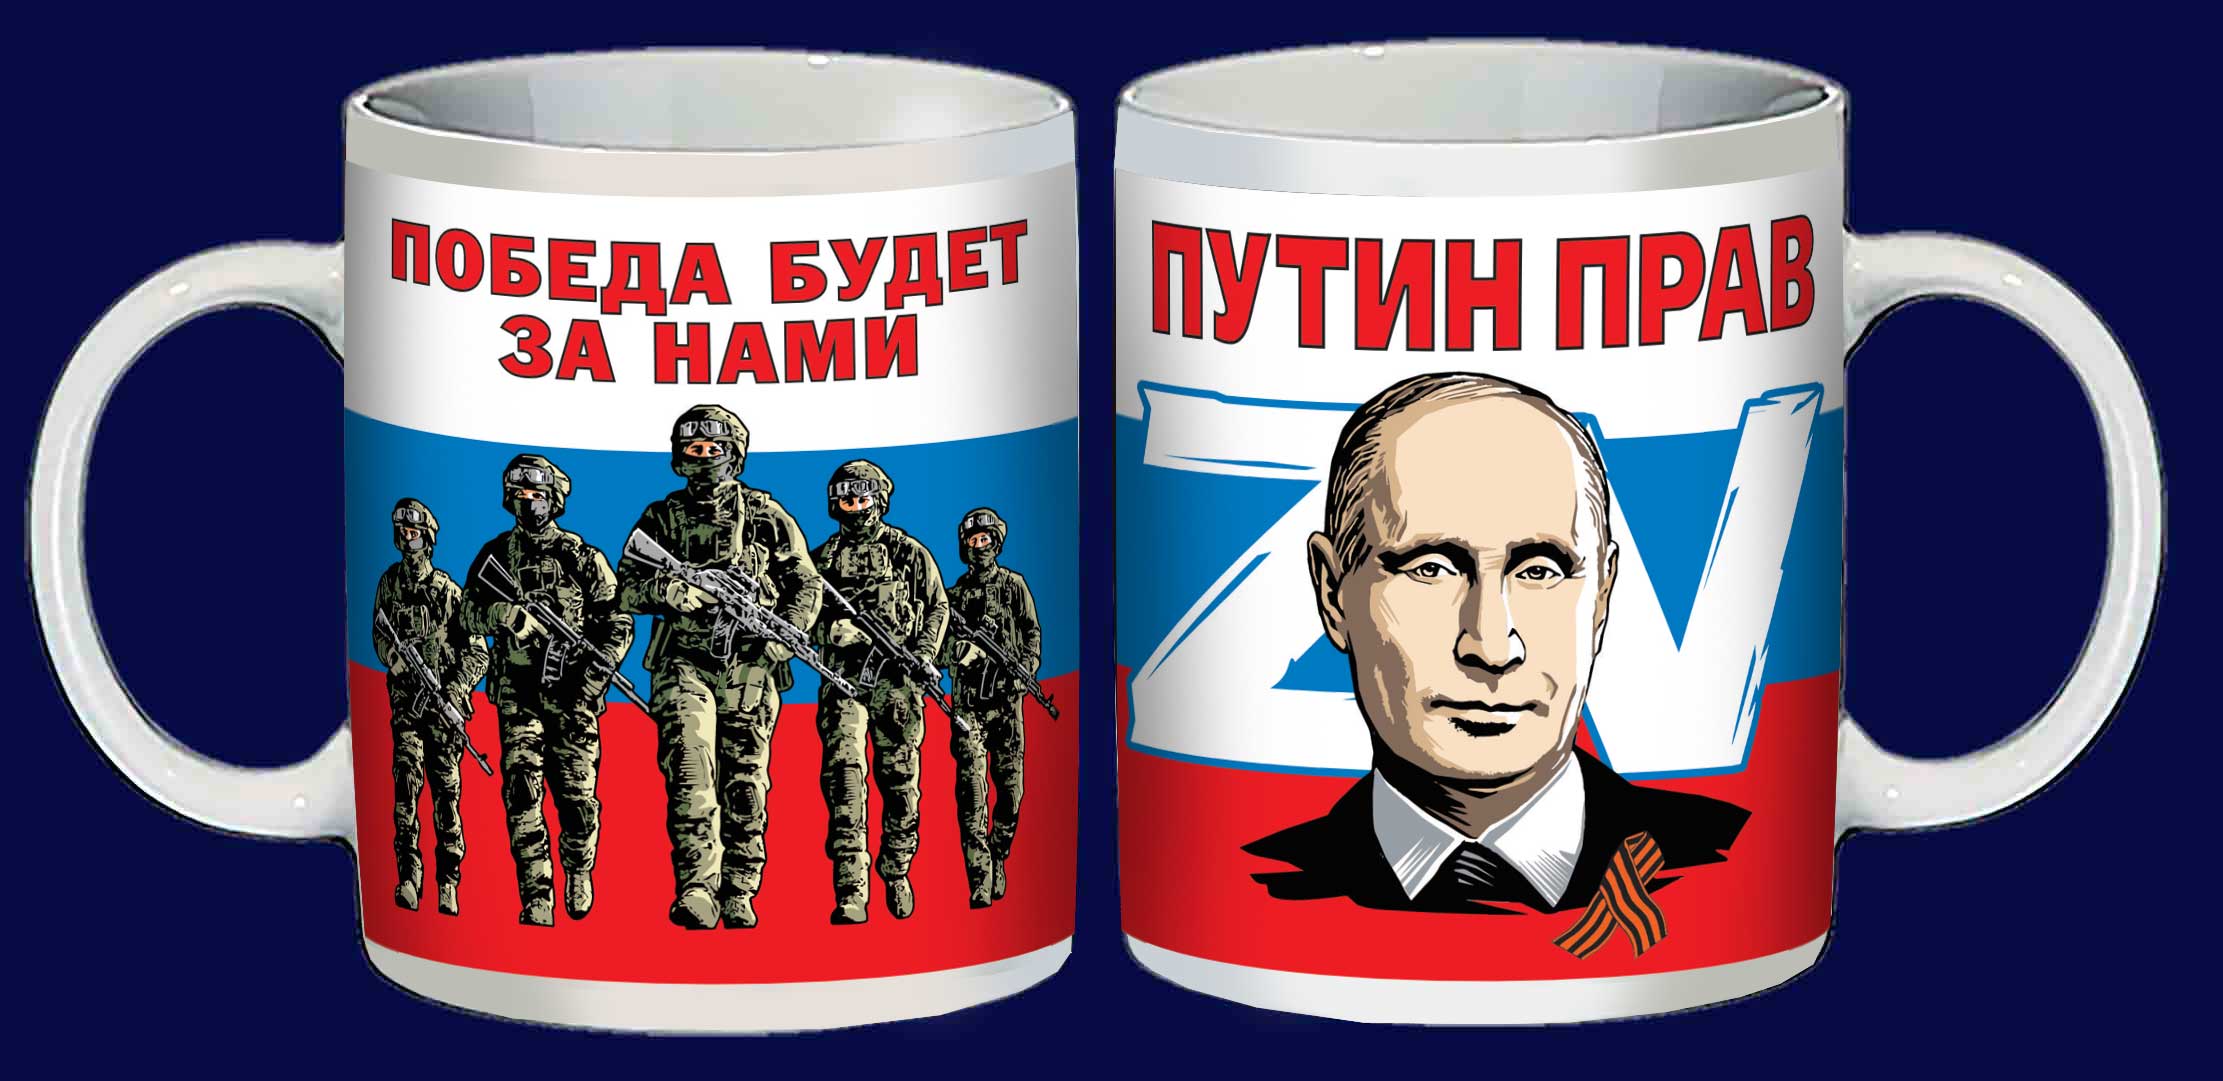 Купить керамическую кружку Z V "Путин прав"